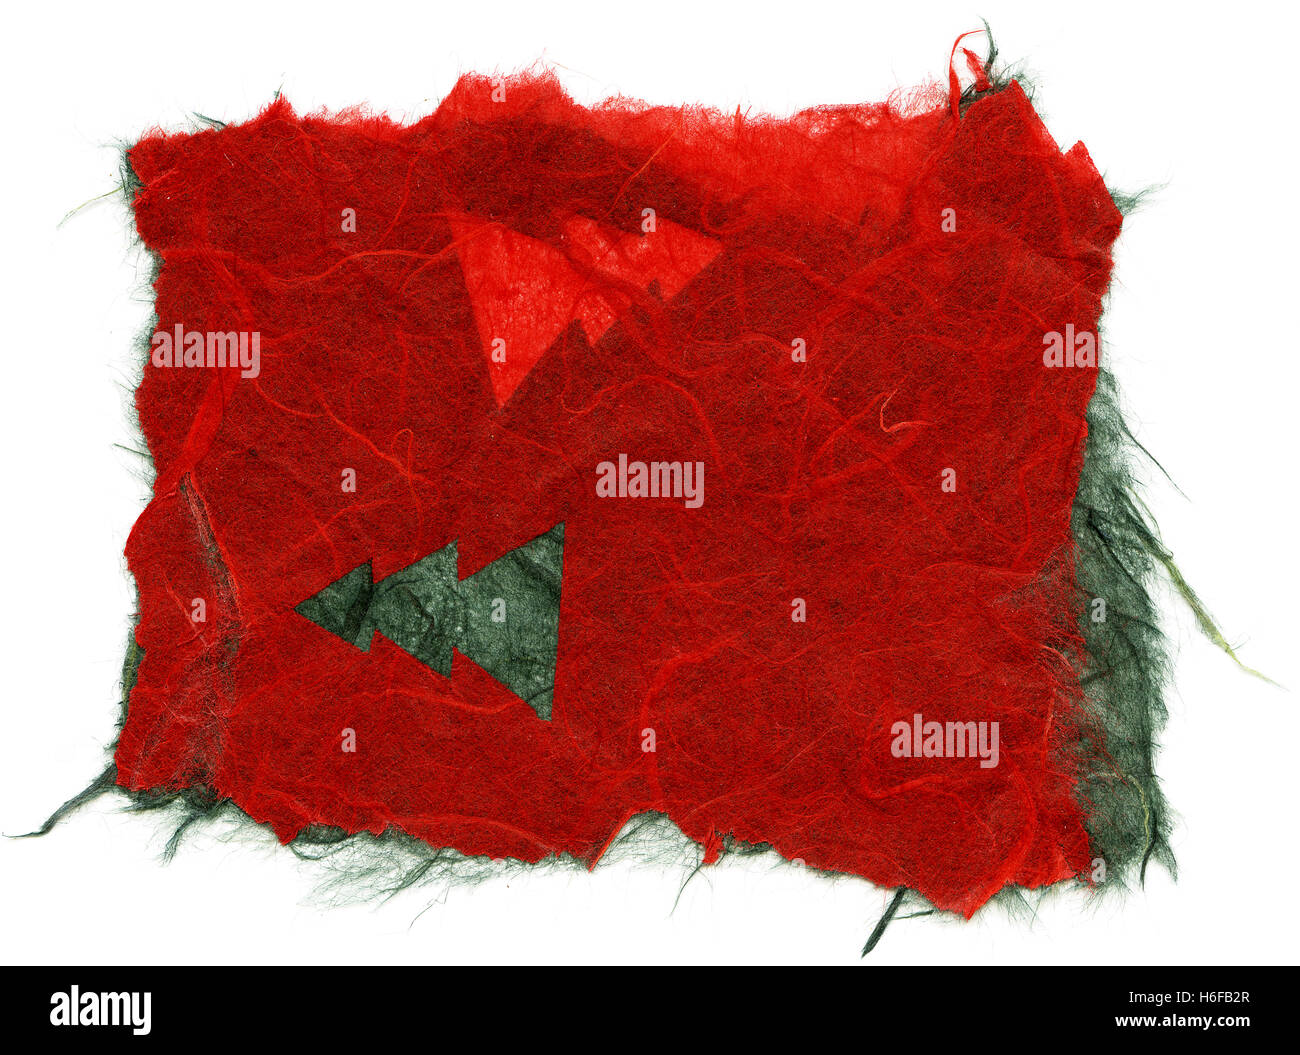 Textur des dunklen roten Reispapier mit einem Muster von grünen Pinien, die Verzierung der Oberfläche, mit zerrissenen Kanten. Isoliert auf weißem bac Stockfoto